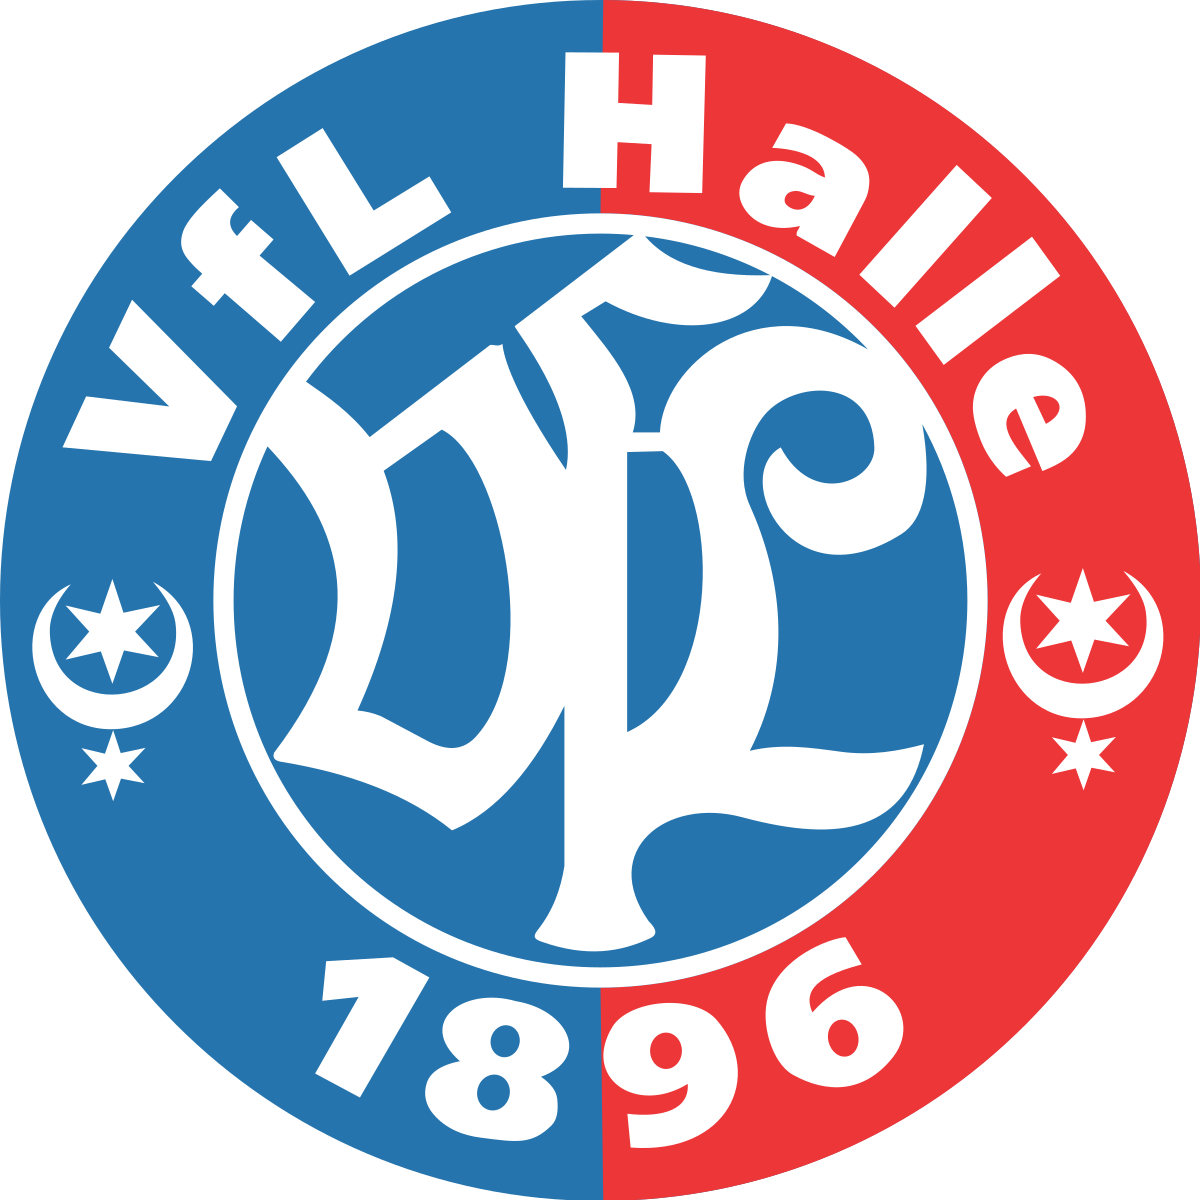 VfL Halle 96 team logo